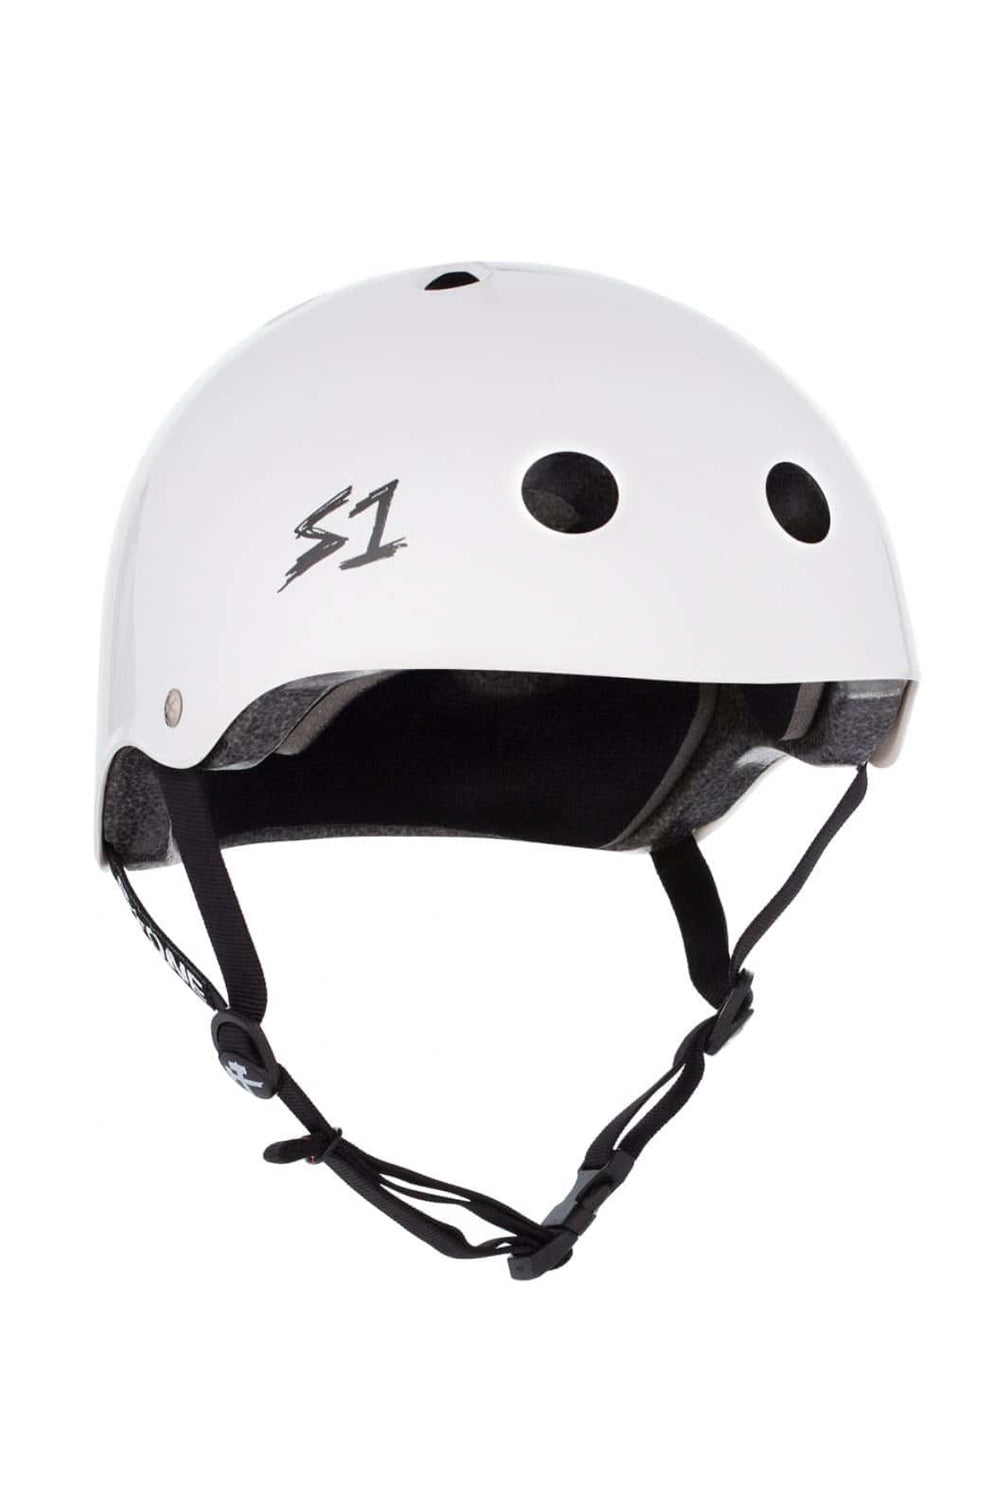 S One Lifer Helmet - White Gloss